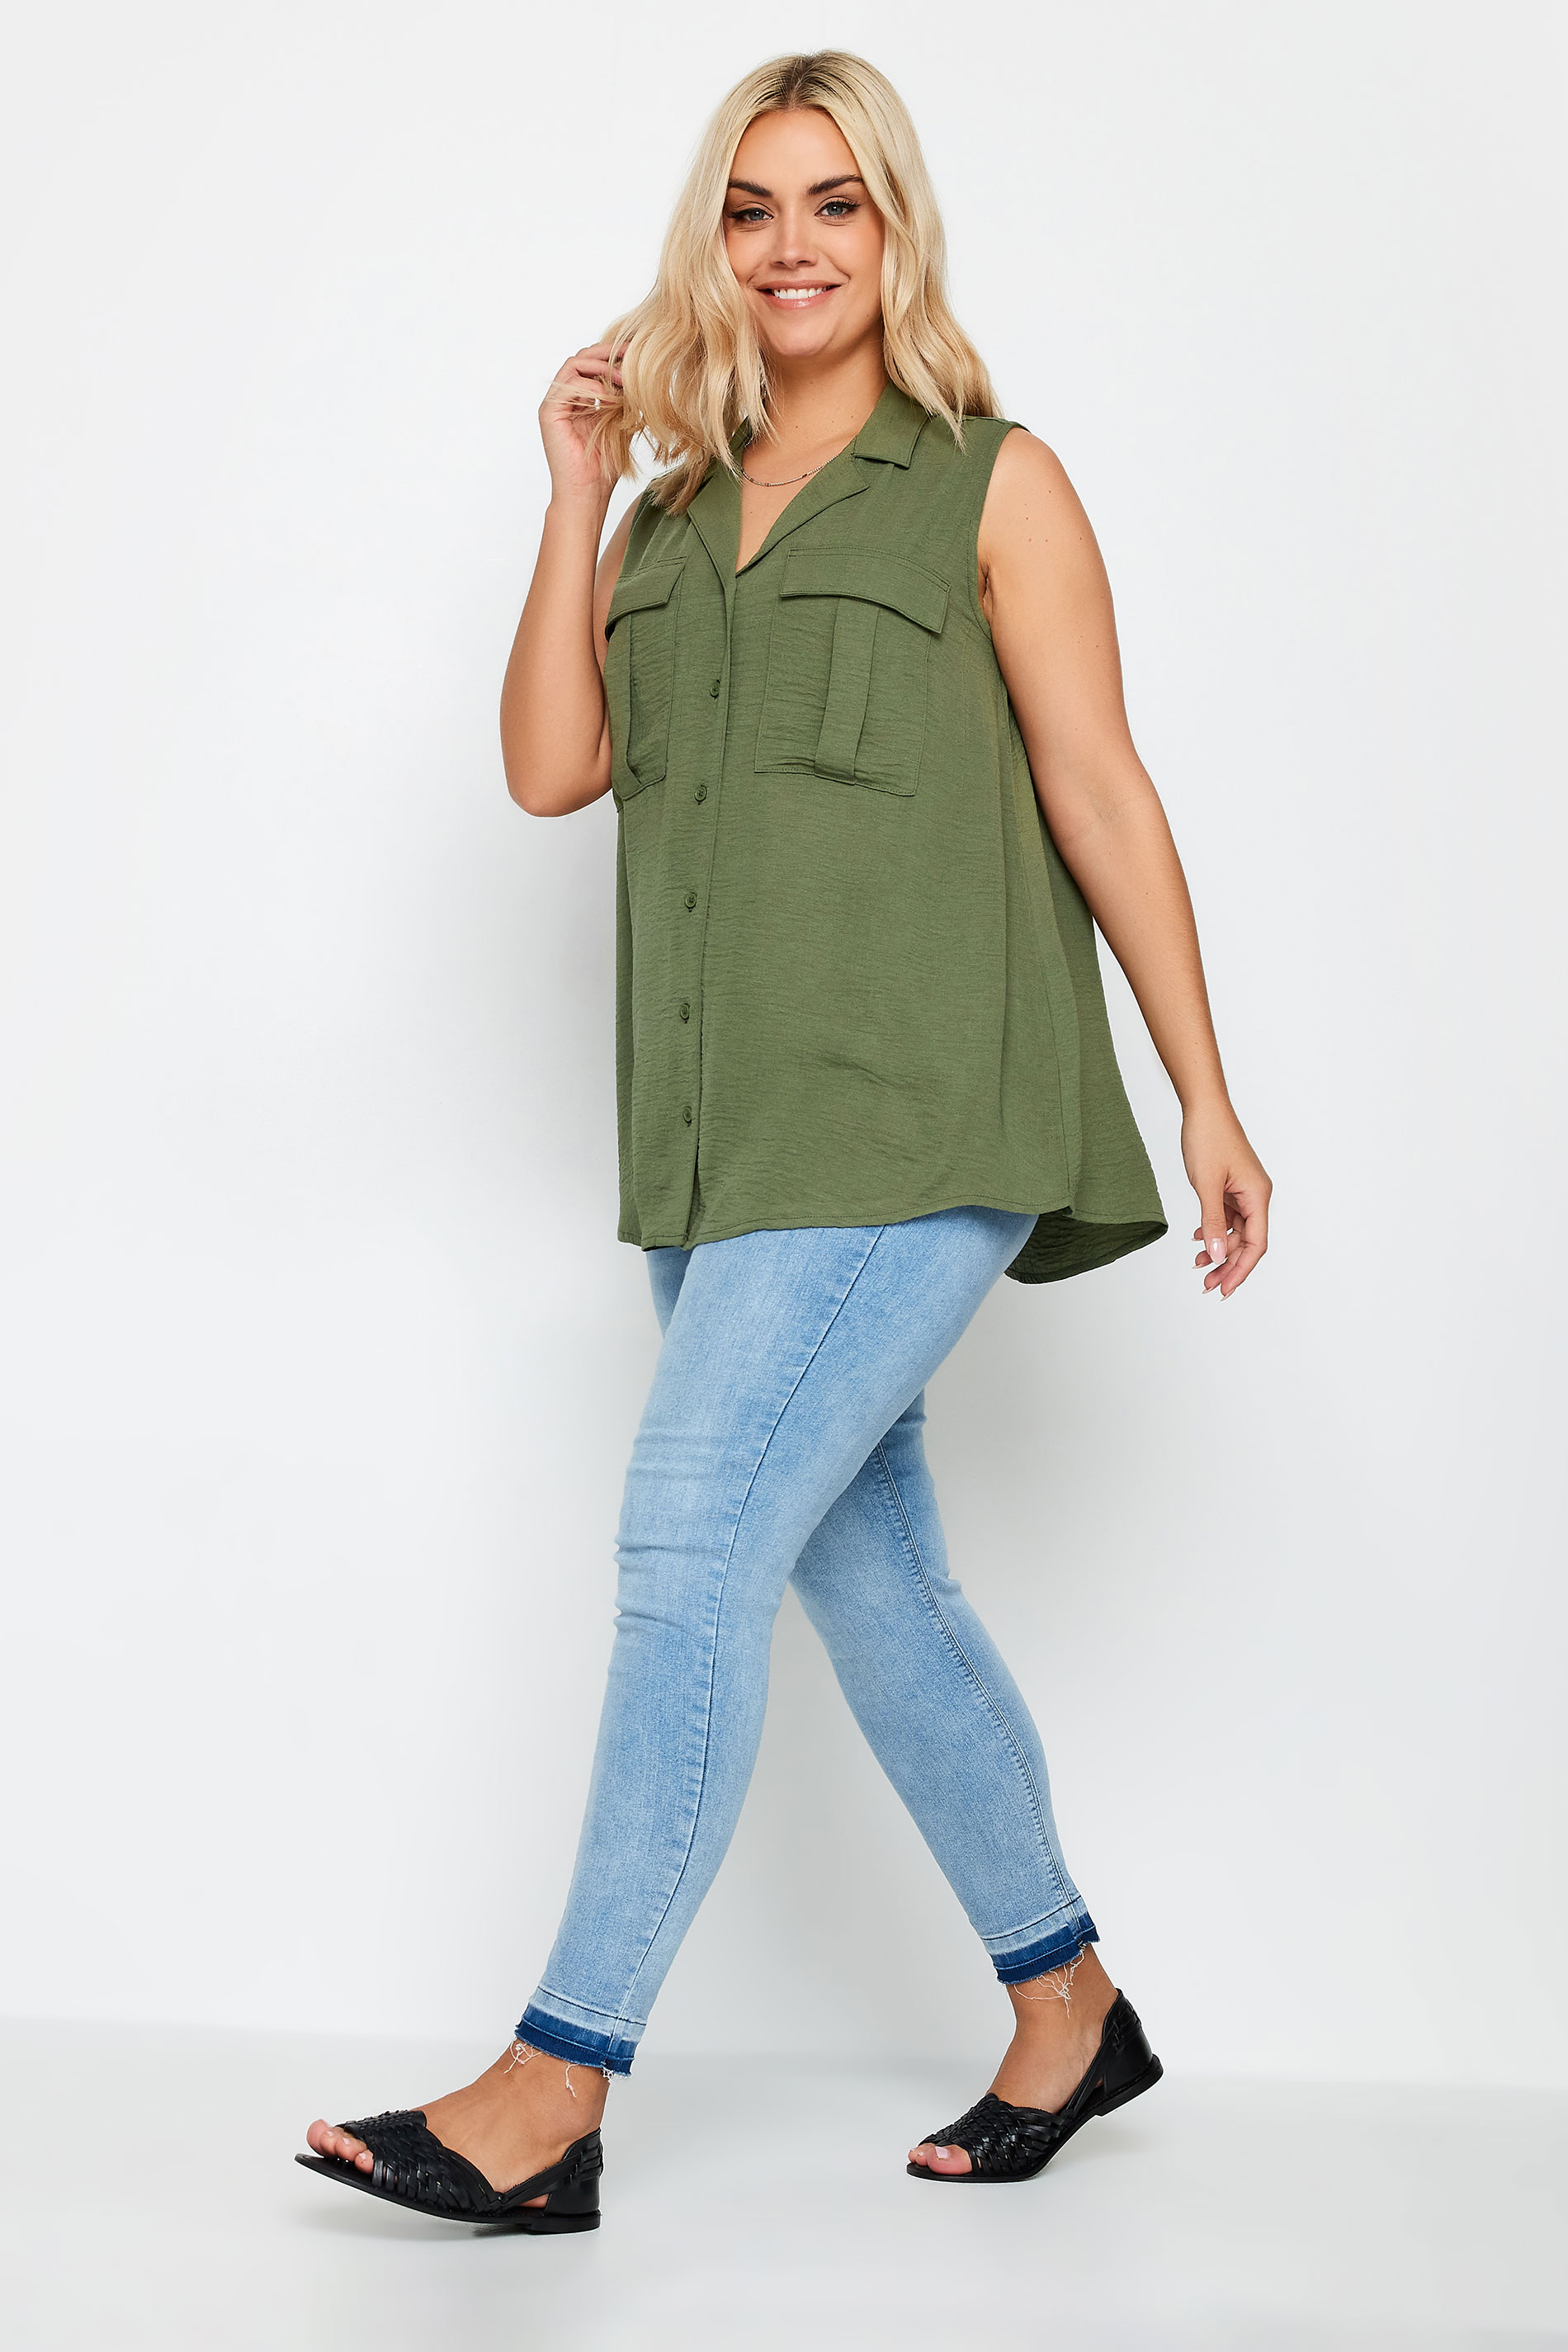 YOURS Plus Size Khaki Green Sleeveless Utility Shirt | Yours Clothing 2